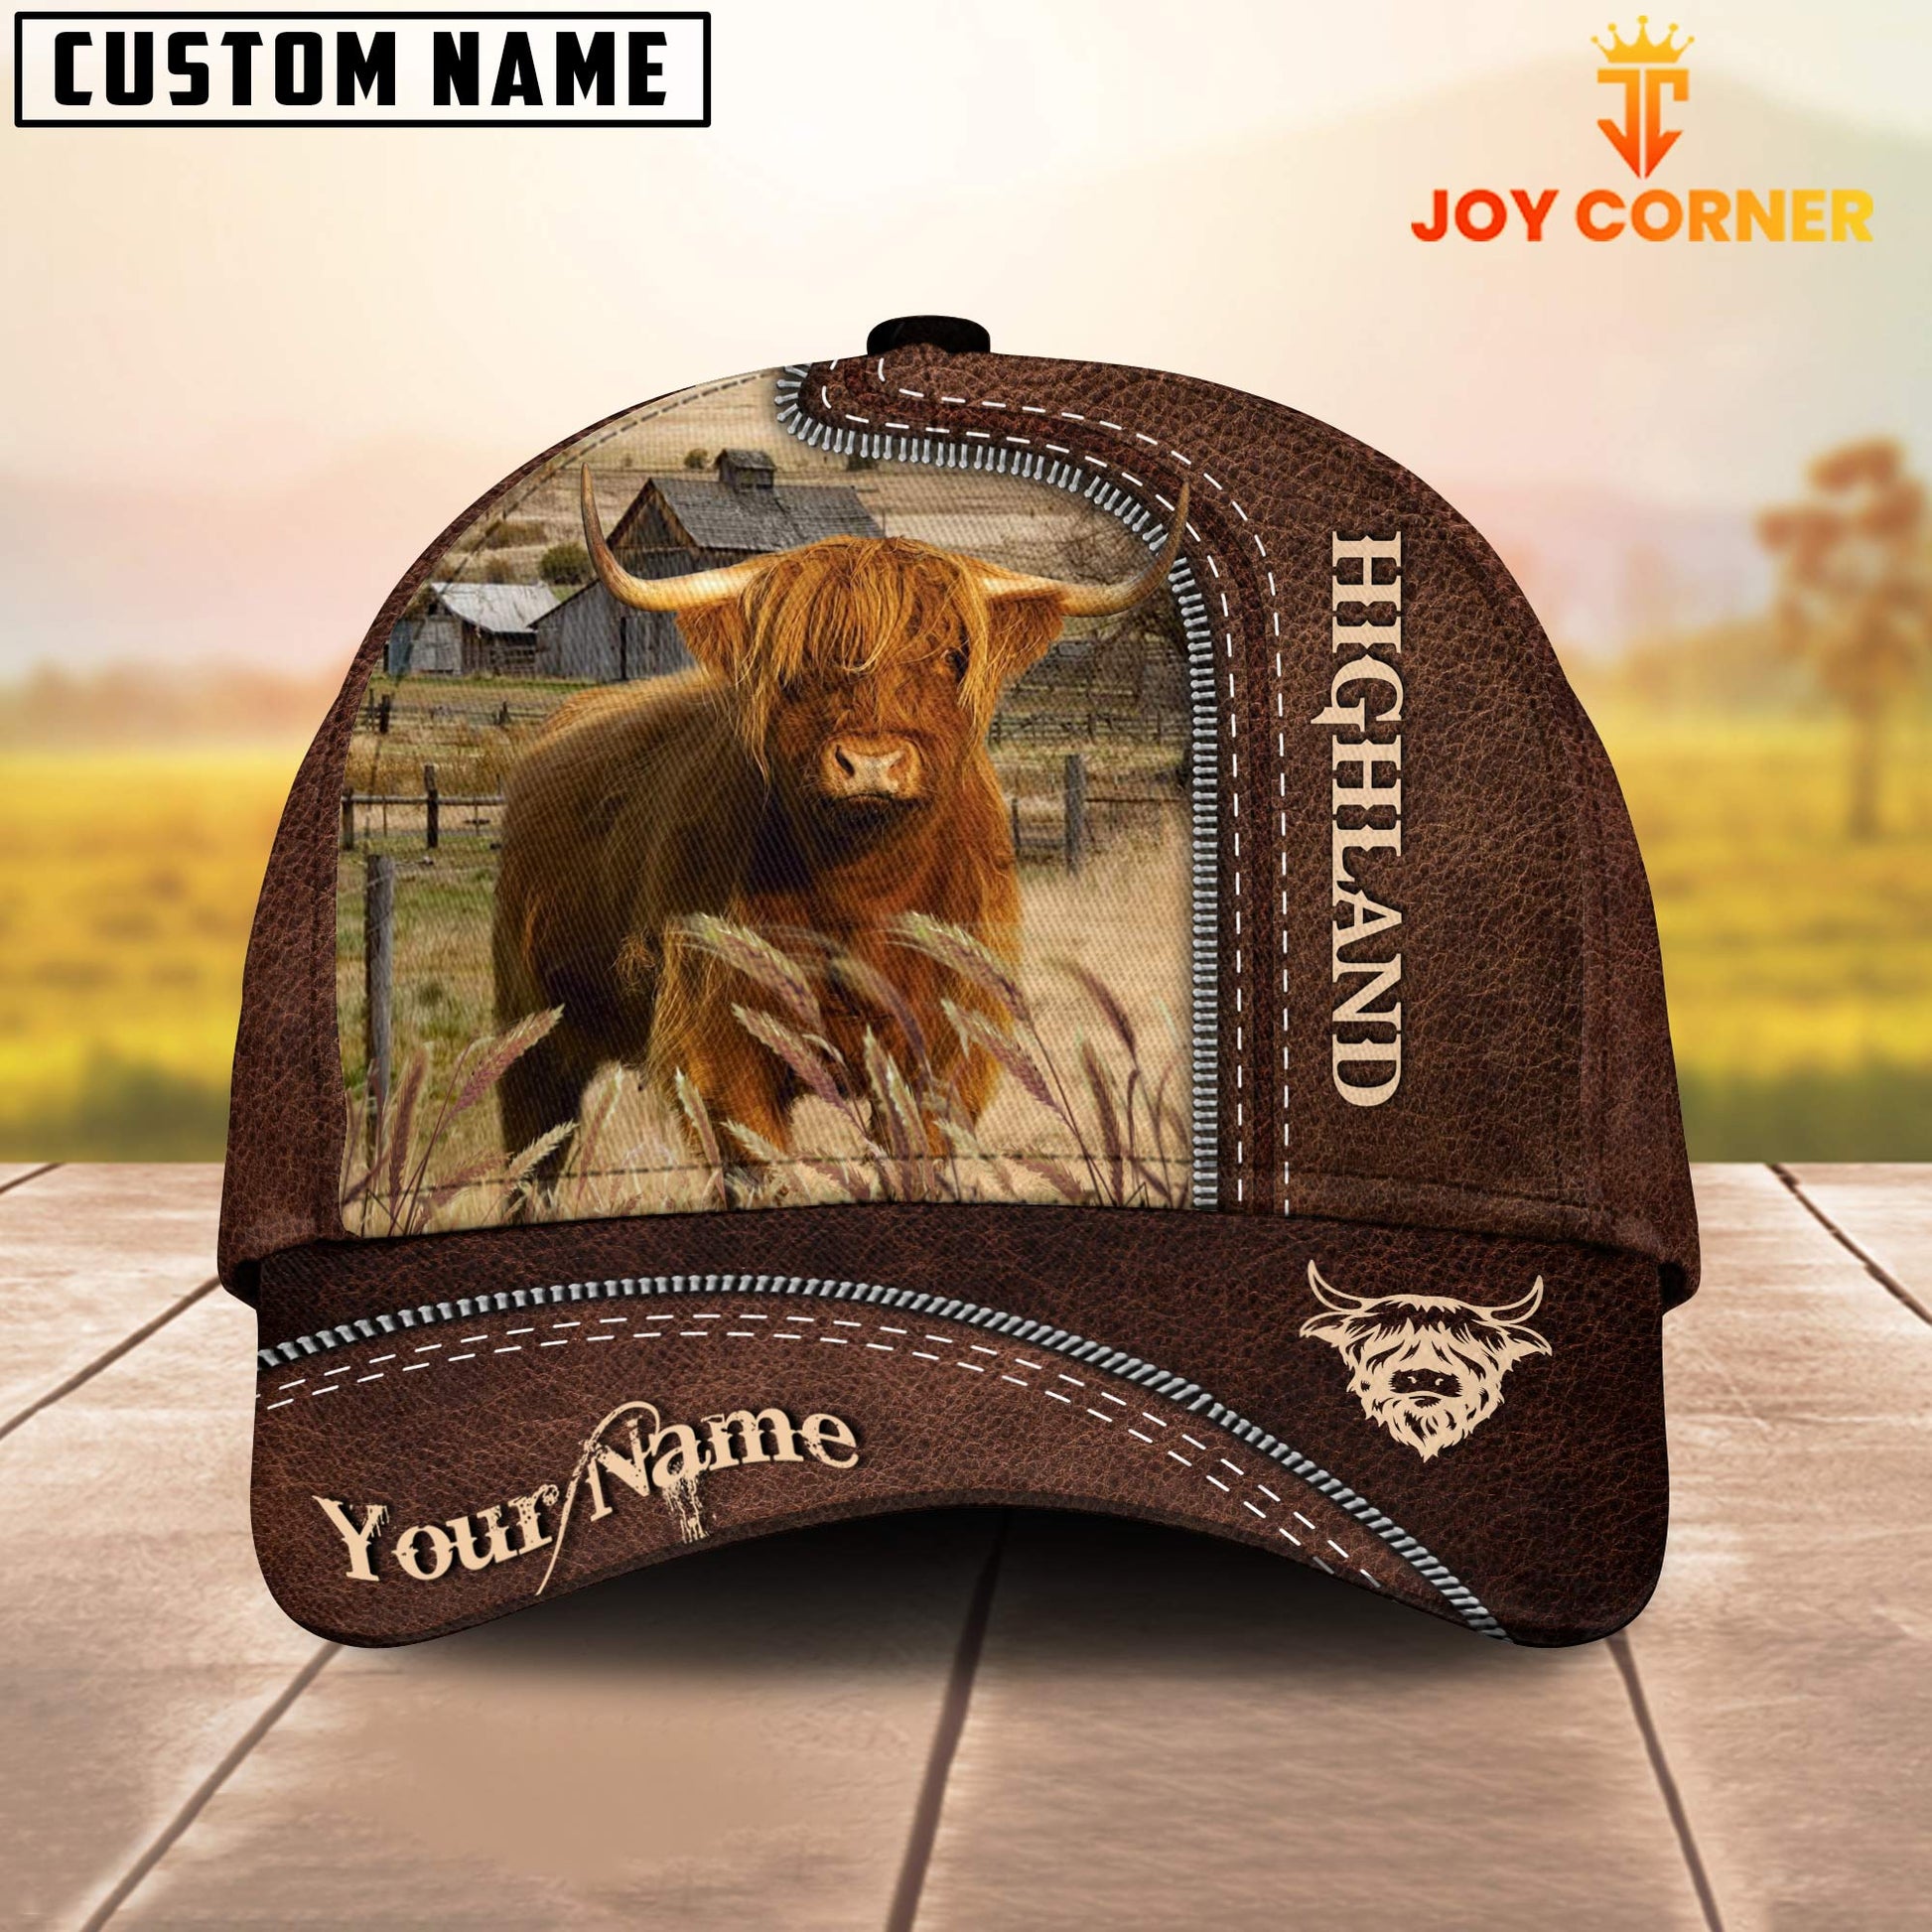 Joycorners Highland Customized Name Leather Pattern Cap – Joy Corner